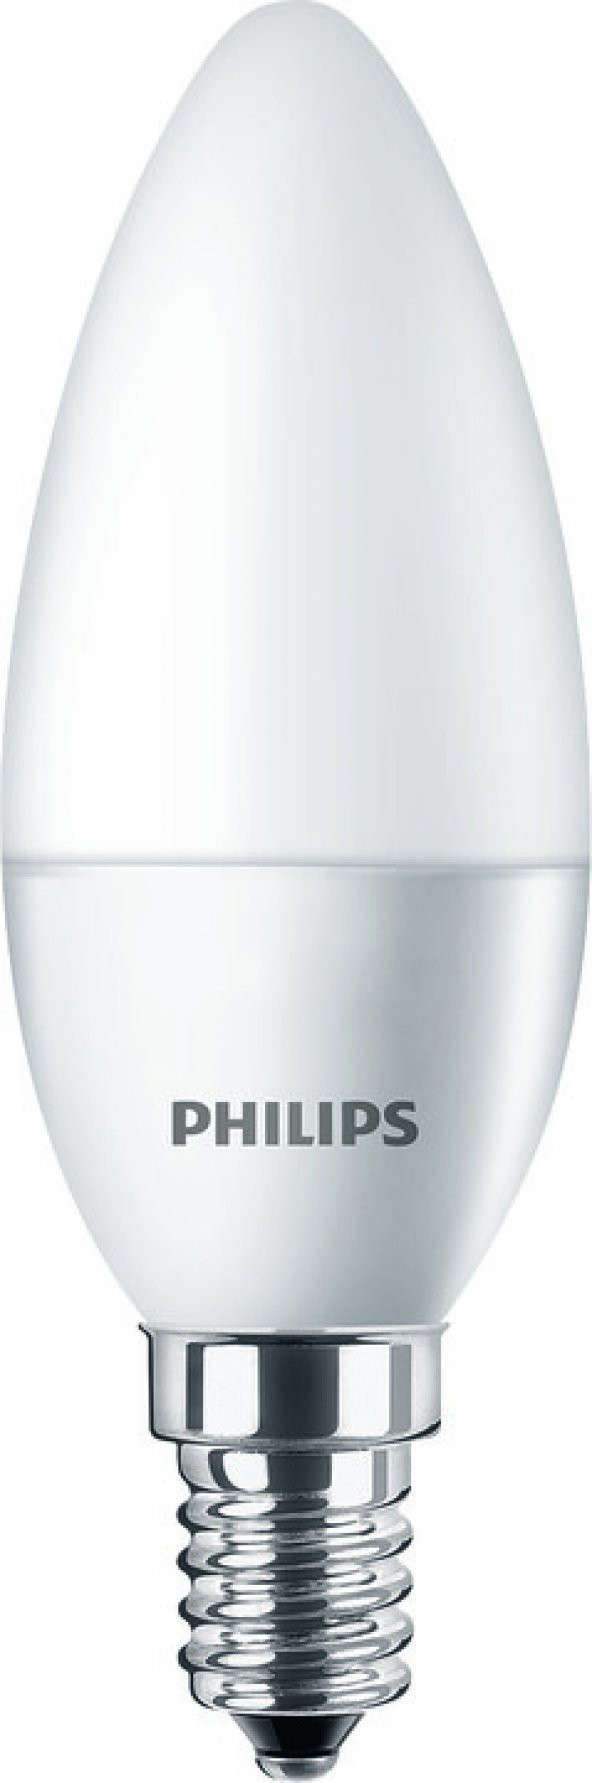 Philips Led Mum Ampul E14 4 W 250 LM - 2700 K - SARI IŞIK